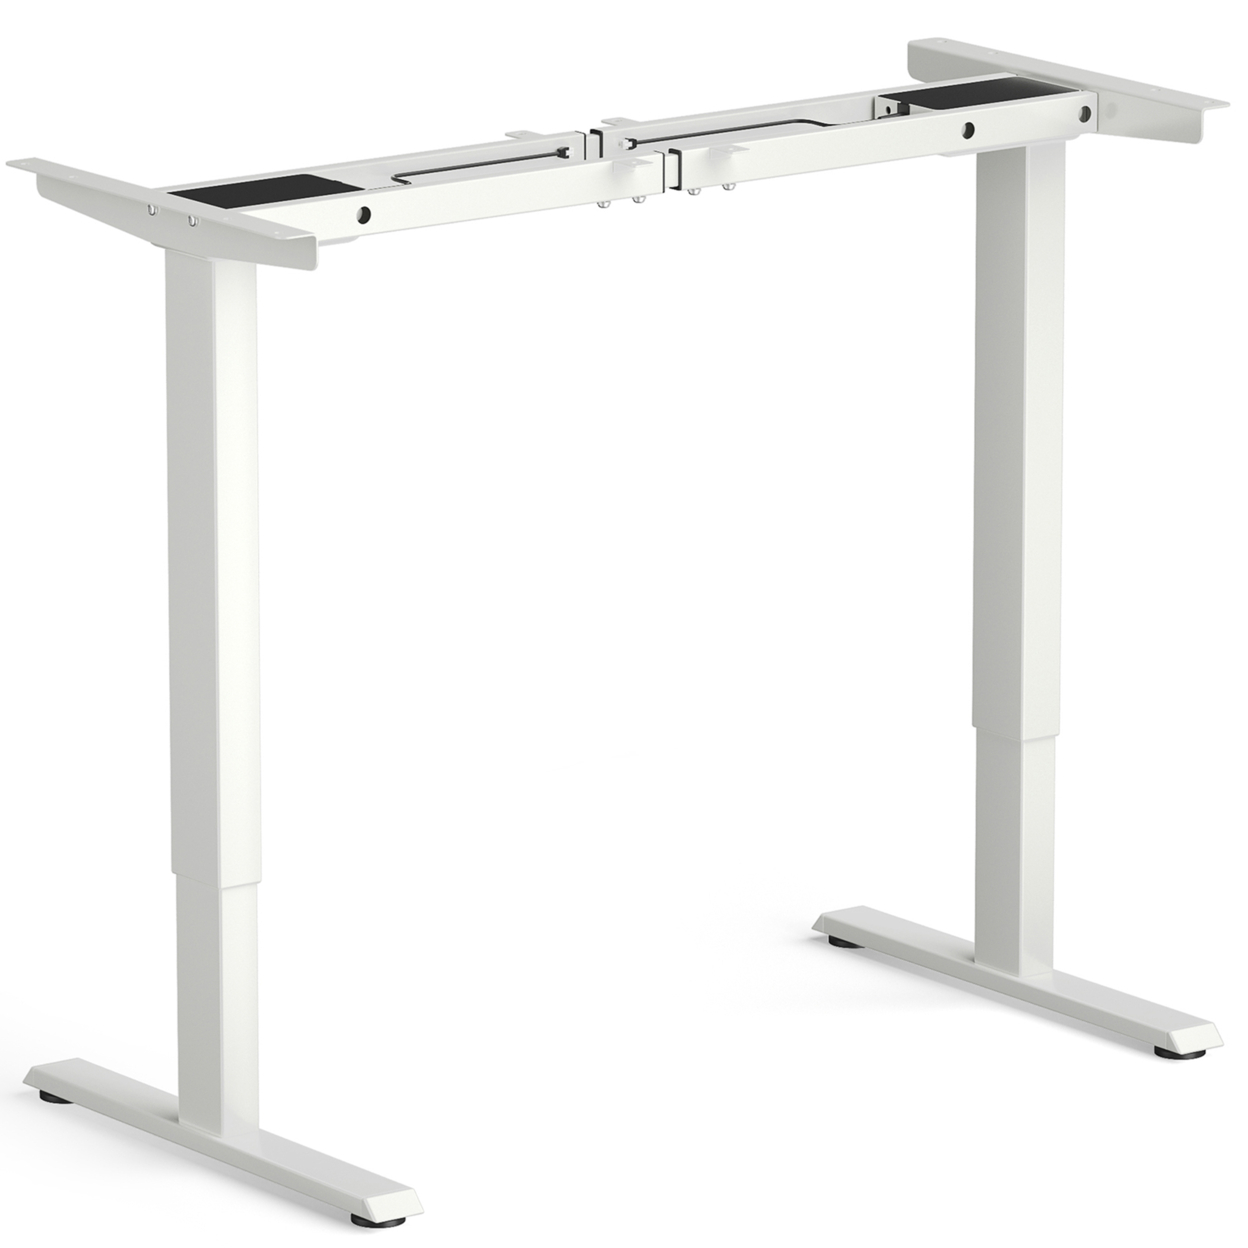 Dual-Motor Stand Up Desk Frame Workstation Base W/ Adjustable Width & Height - Black